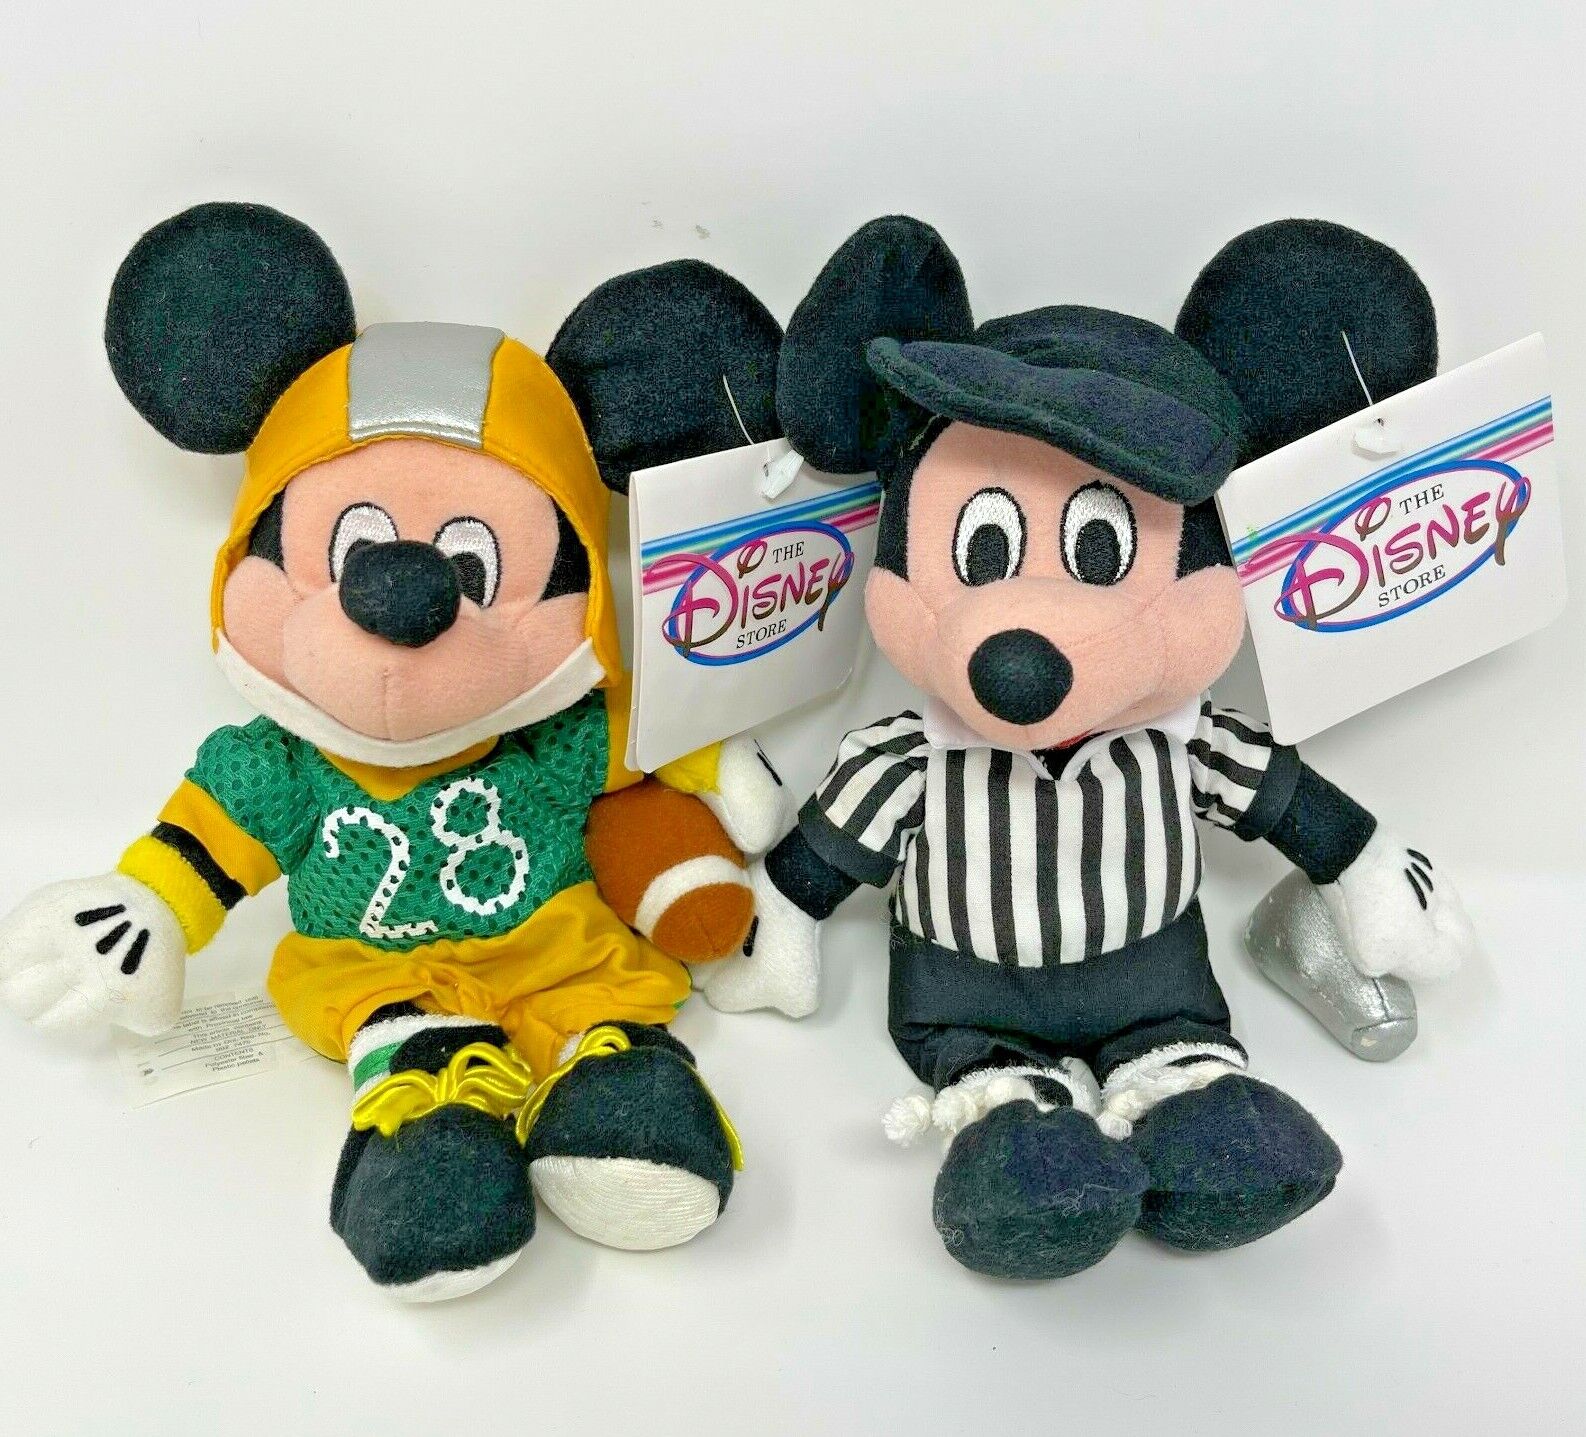 Football Mickey Mouse Referee Plush Bag Disney Albuquerque Mall OFFicial shop Bean